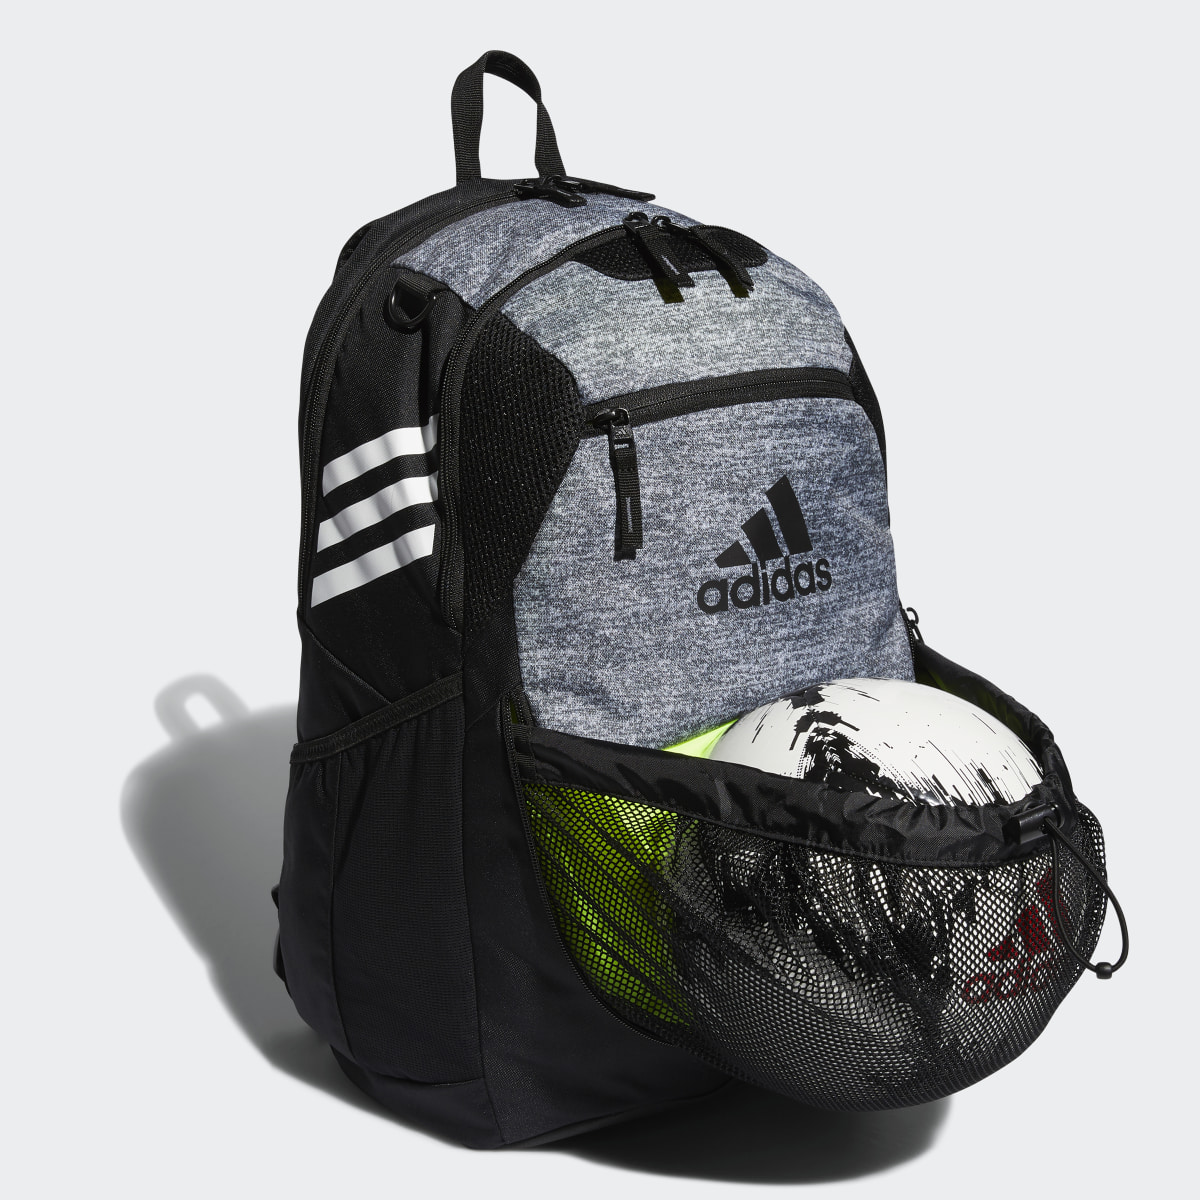 Adidas Stadium Backpack. 4